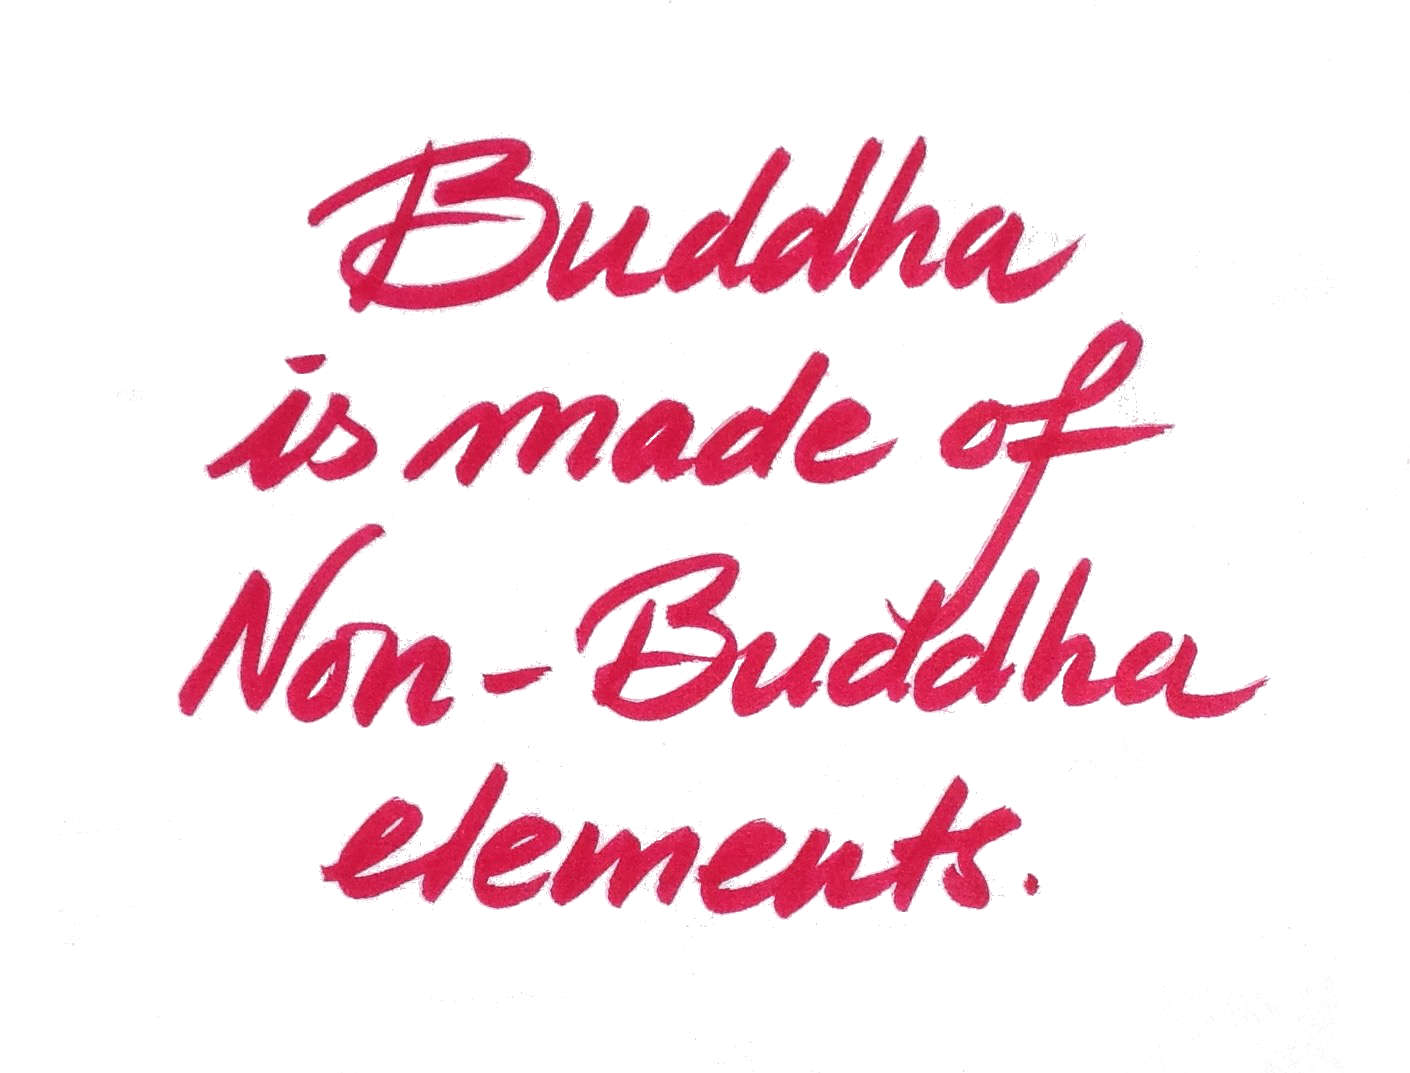 Buddha Non Buddha kl.JPG